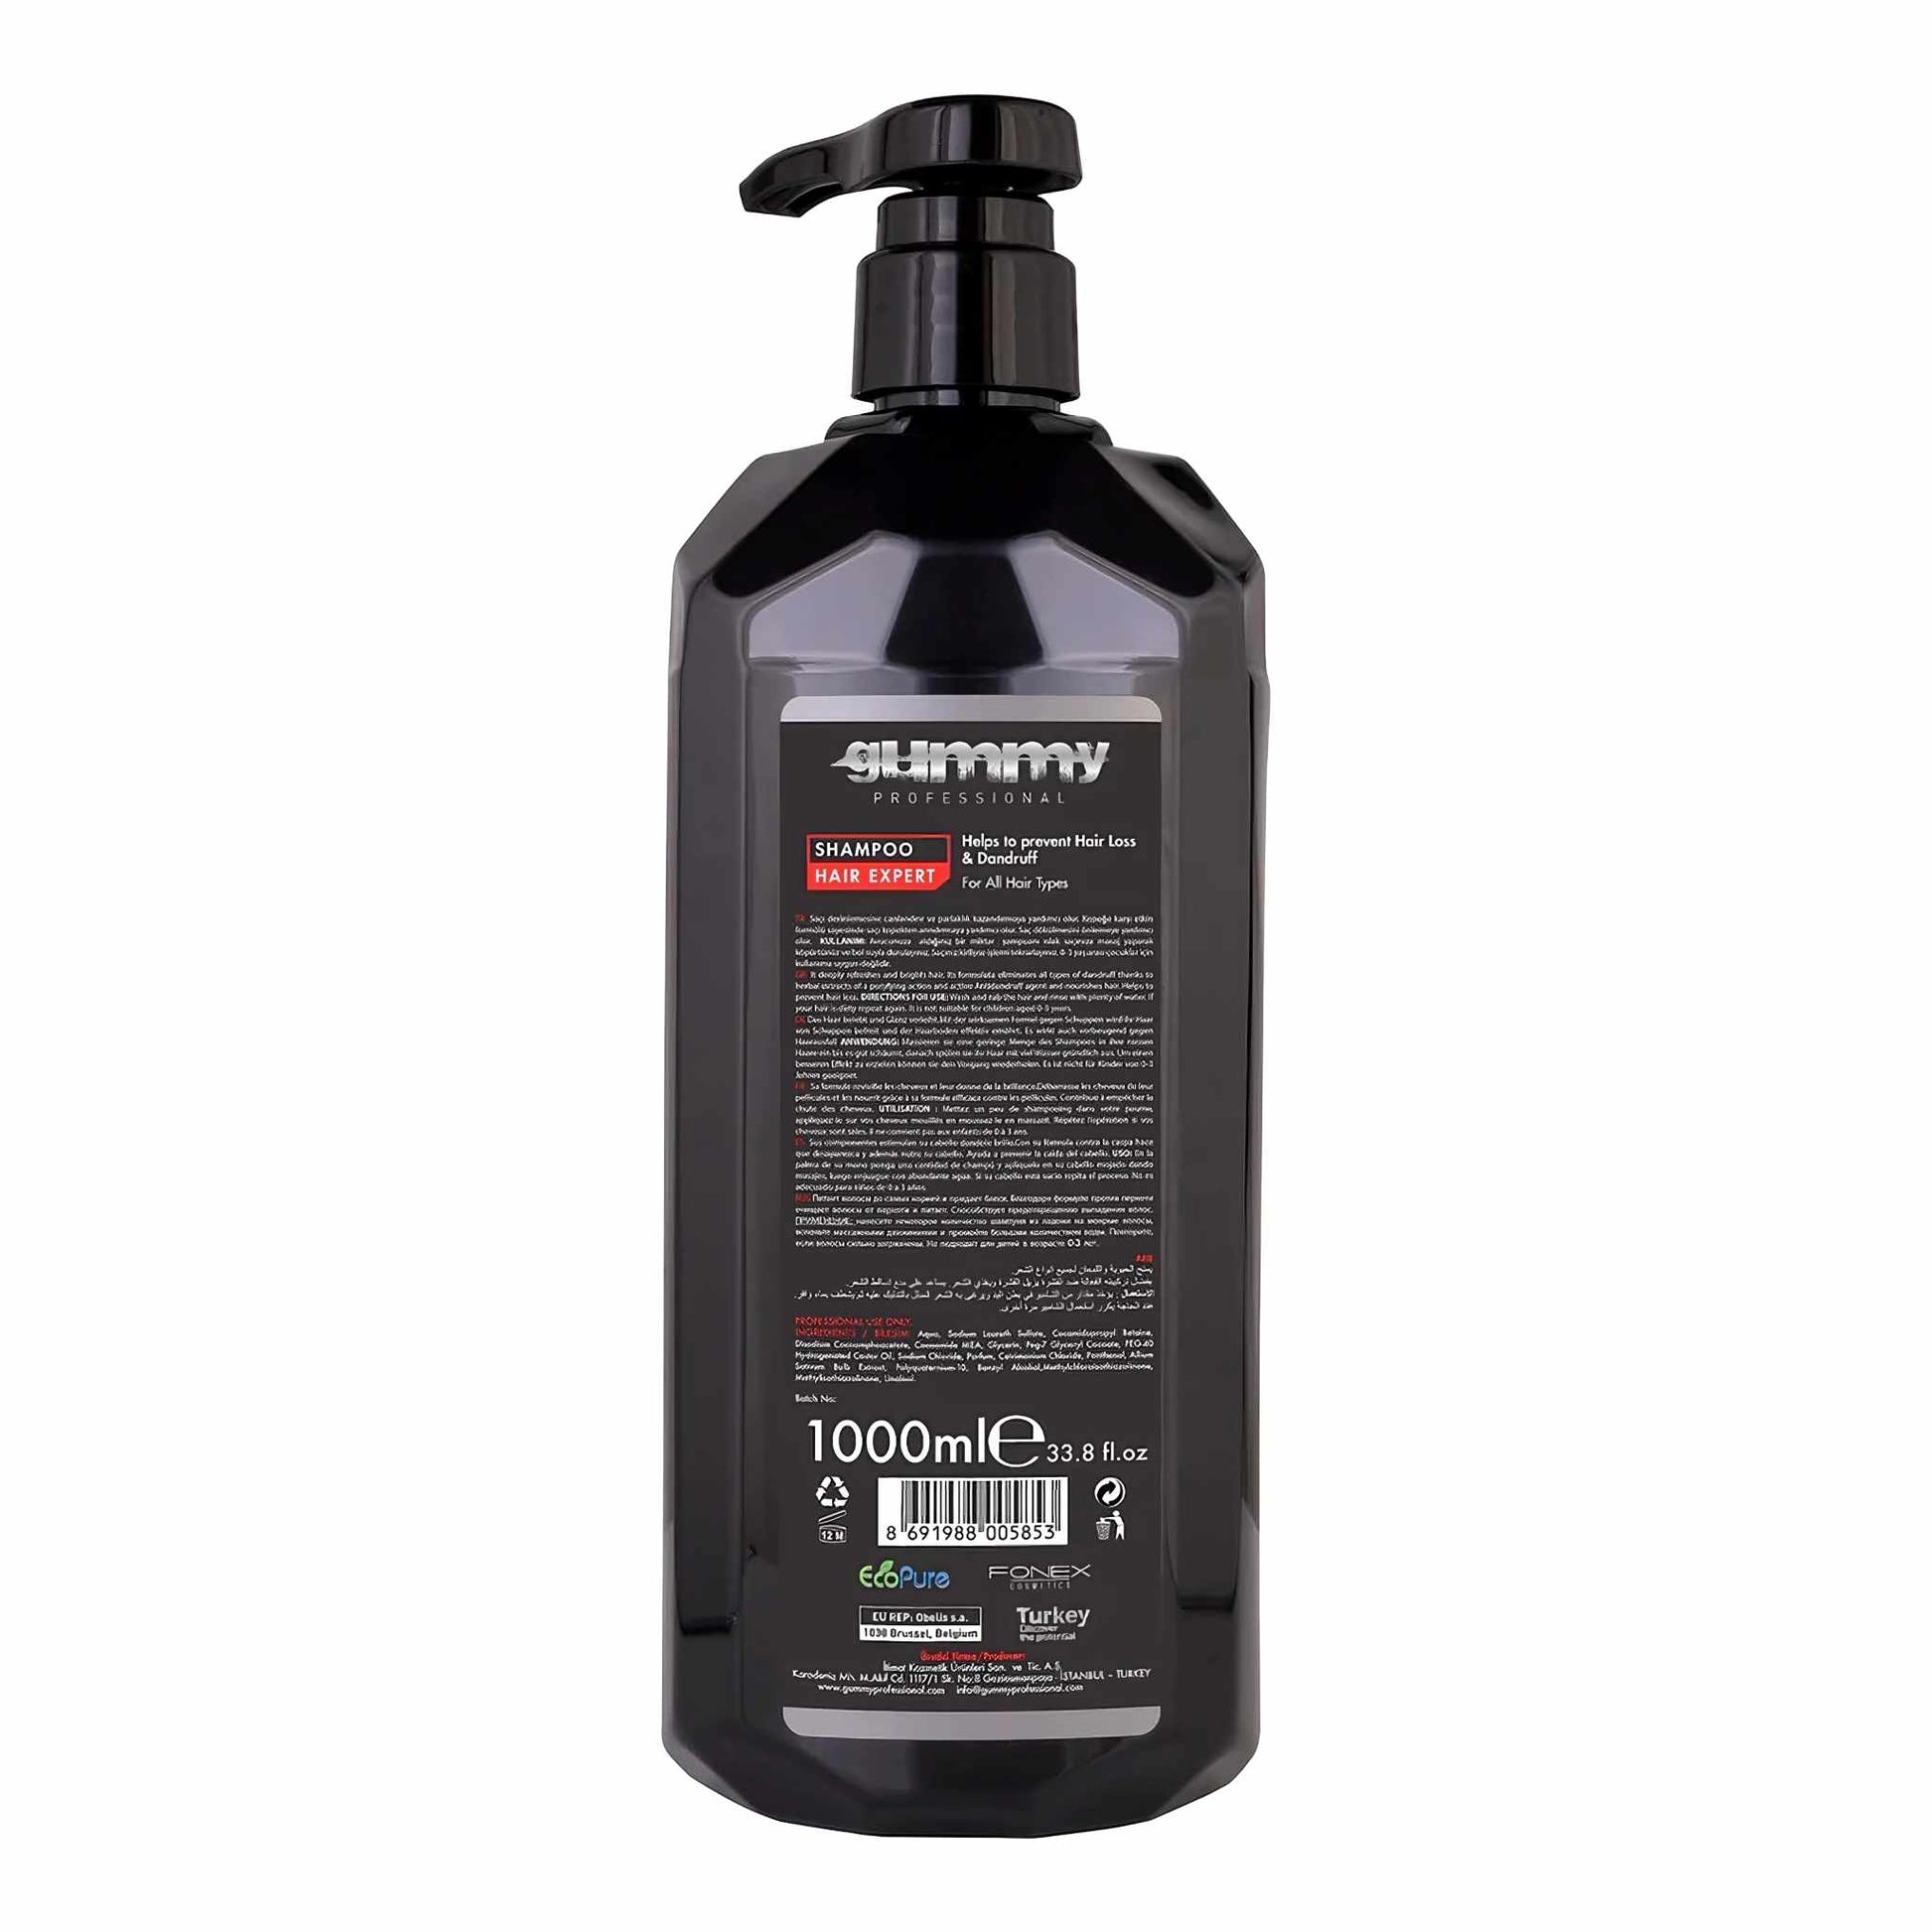 Gummy Shampoo Hair Expert 1000 ml Backside Label